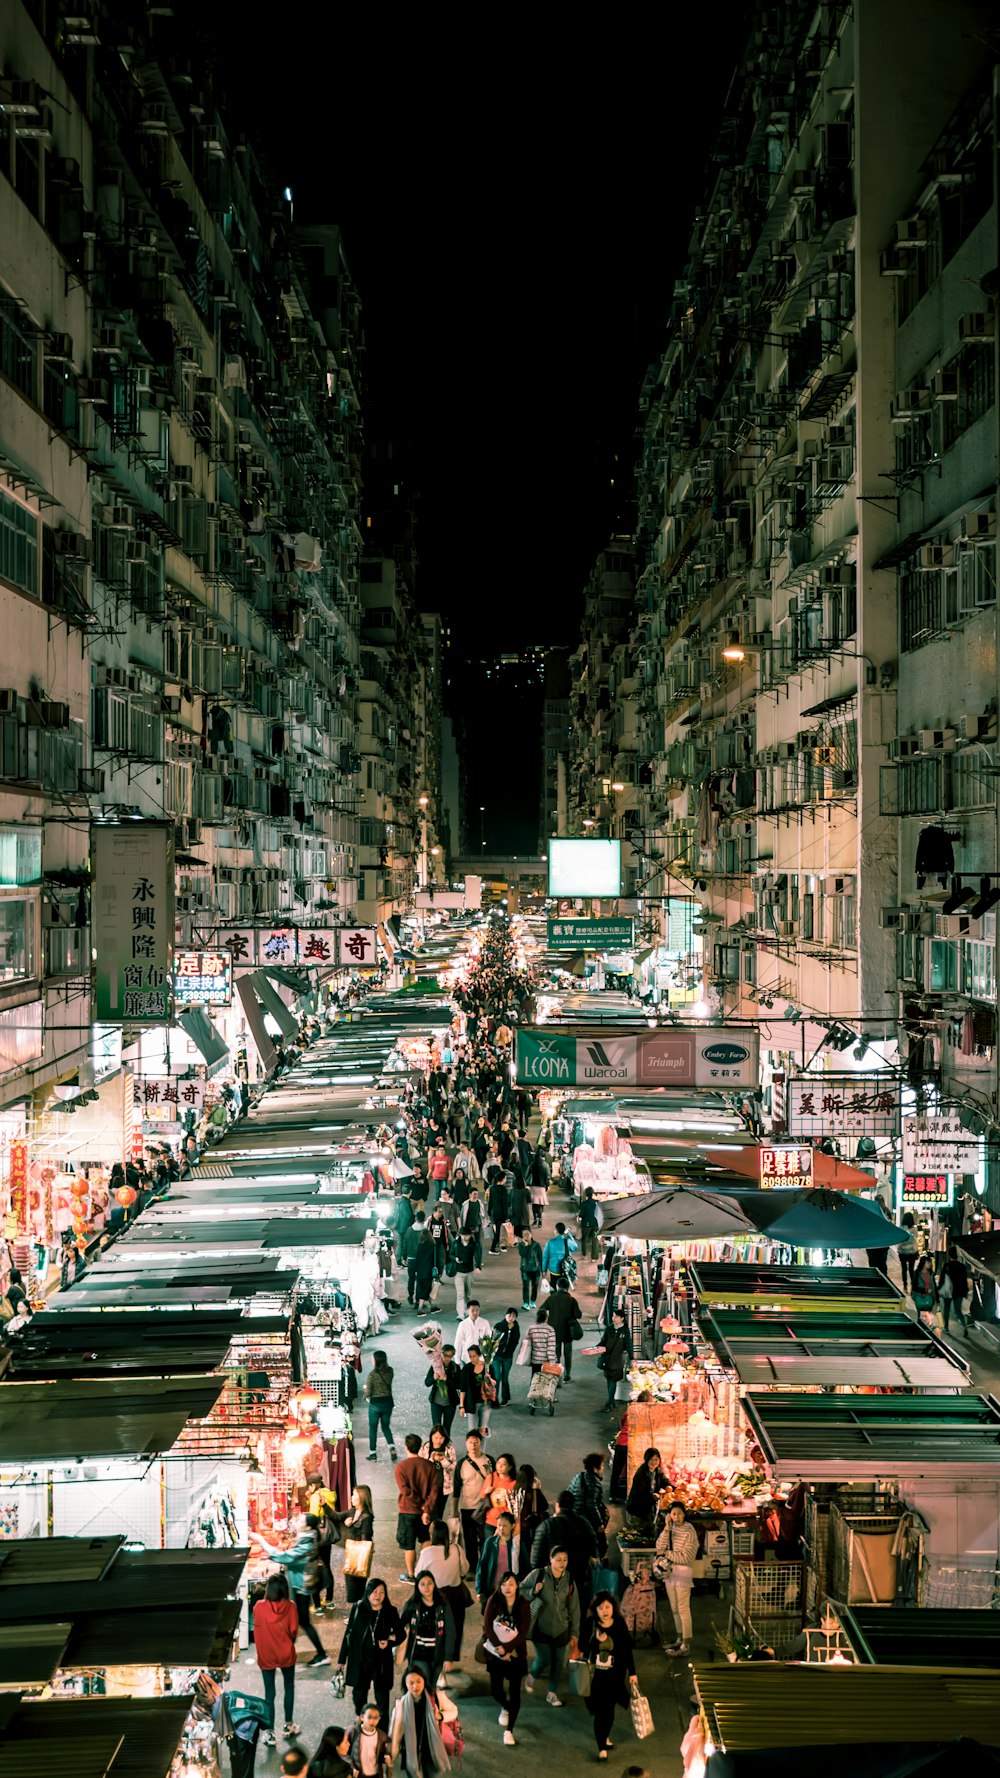 people walking on the streets between buildings